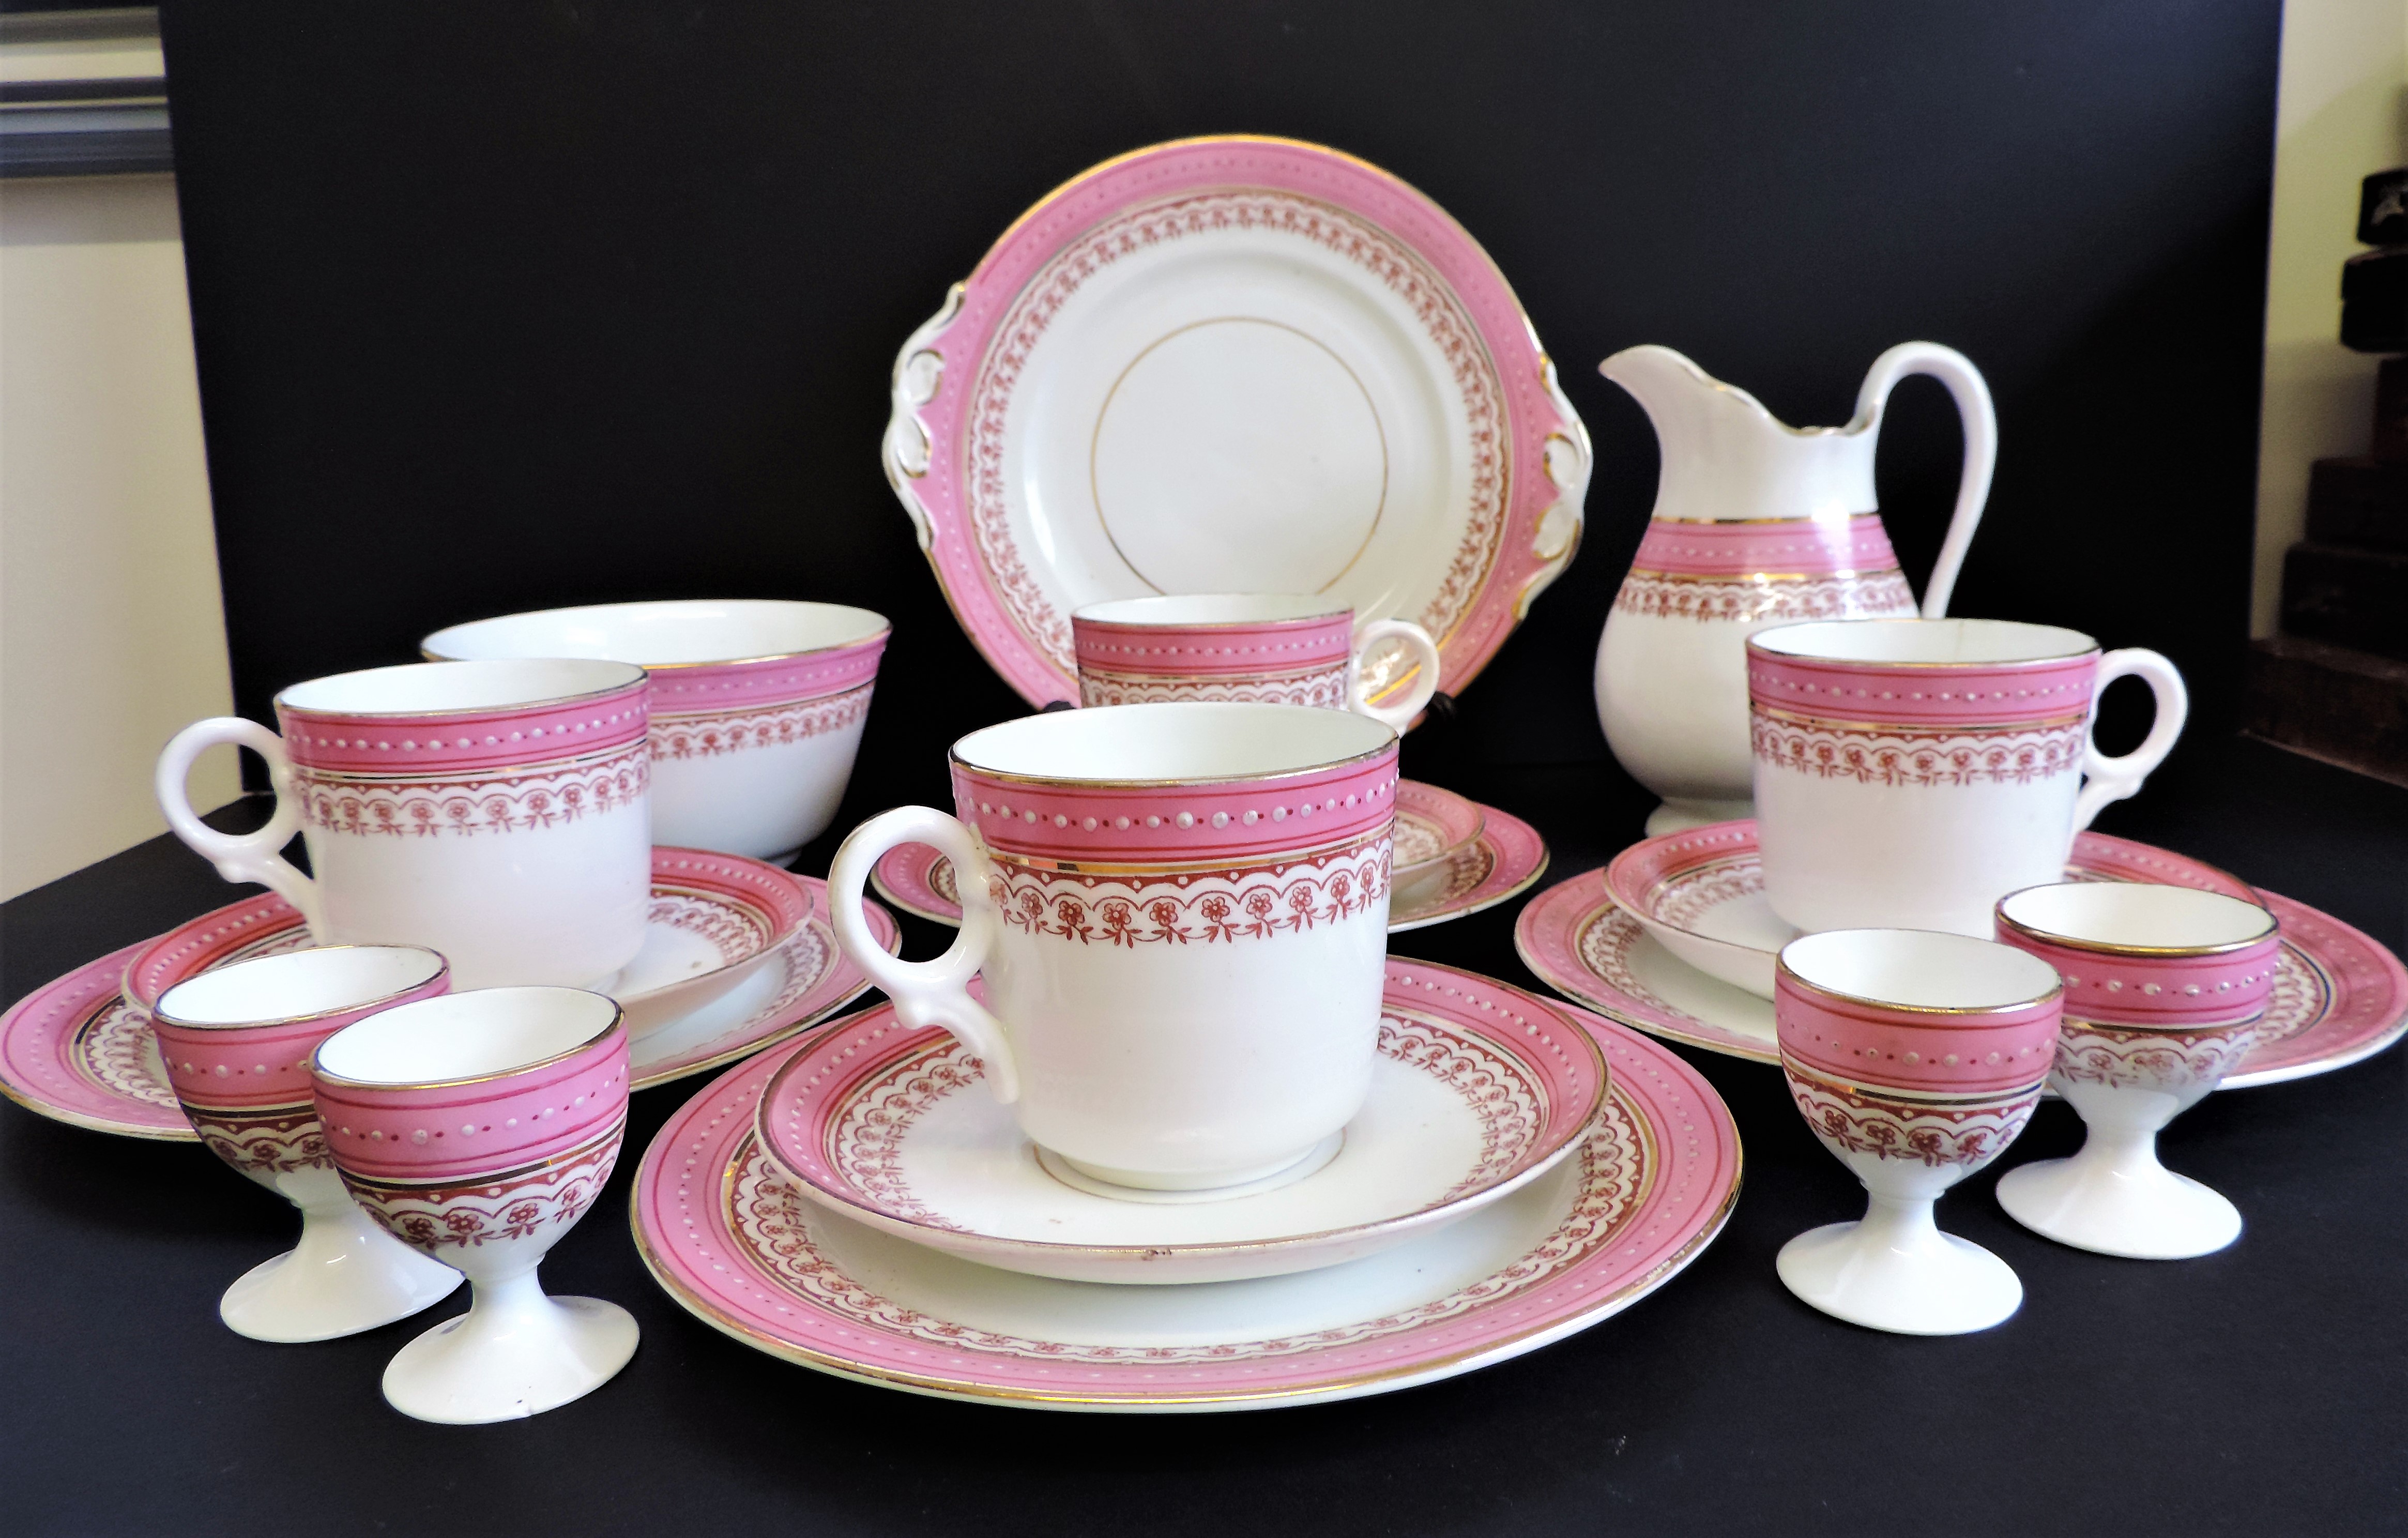 Vintage 19 piece Porcelain Breakfast/Tea Set for 4 People - Image 6 of 24